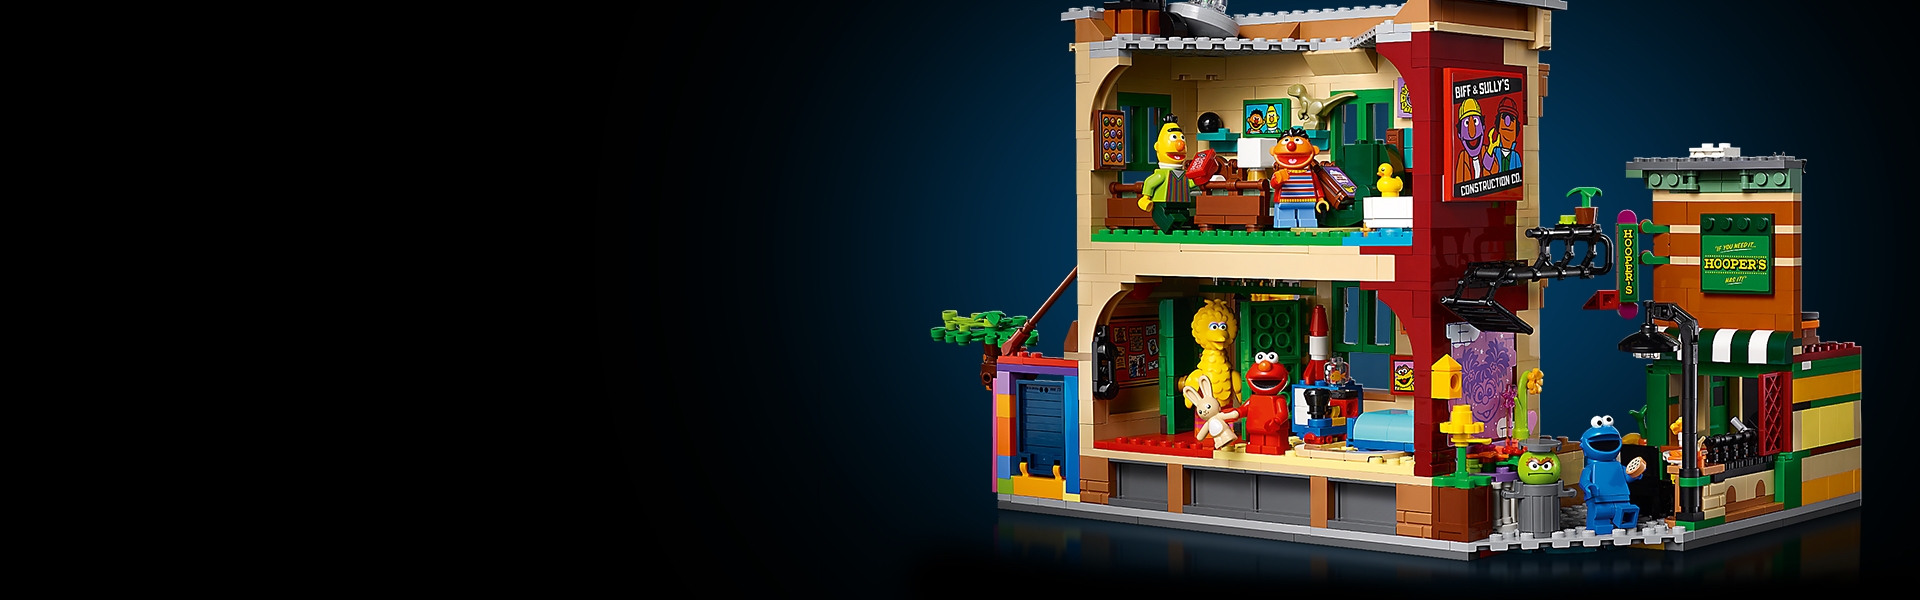 レゴ(LEGO) アイデア セサミストリート 123番地 21324 おもちゃ ブロック プレゼント 家 おうち 男の子 女の子 大人 海外